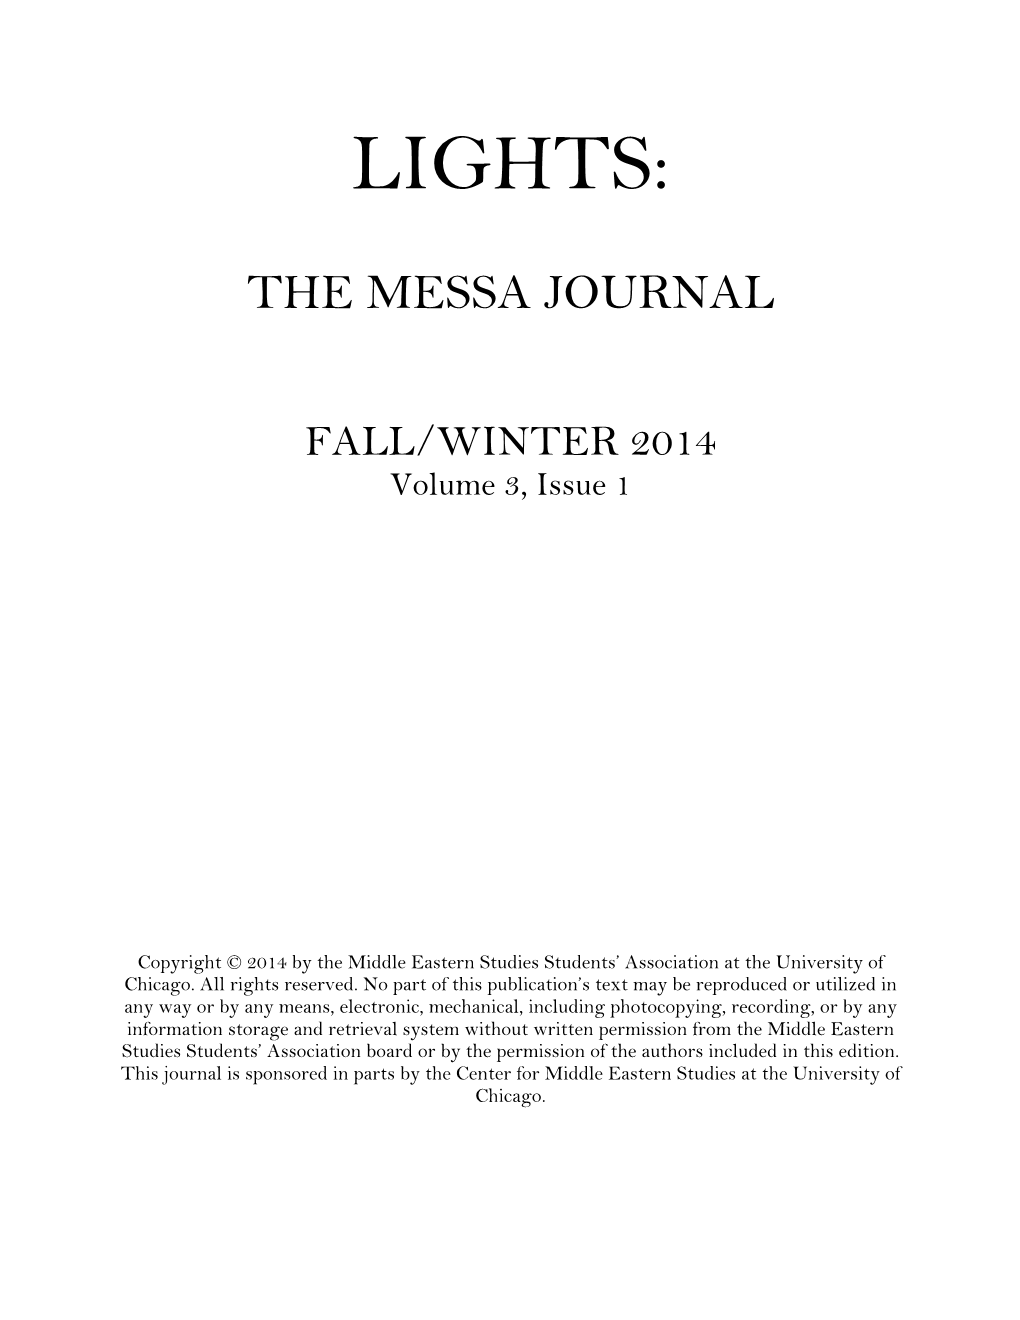 Lights: the MESSA Journal